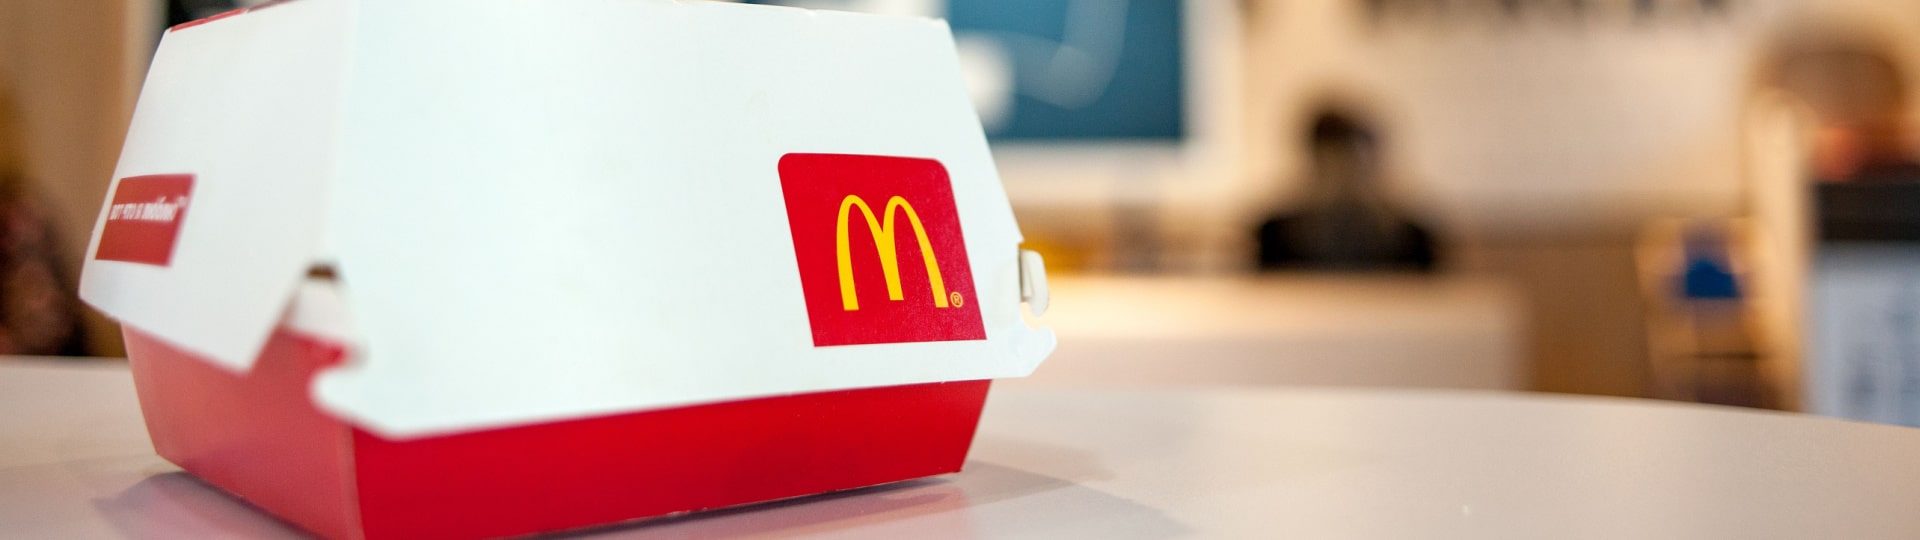 McDonald's zvýšil tržby o 14 procent